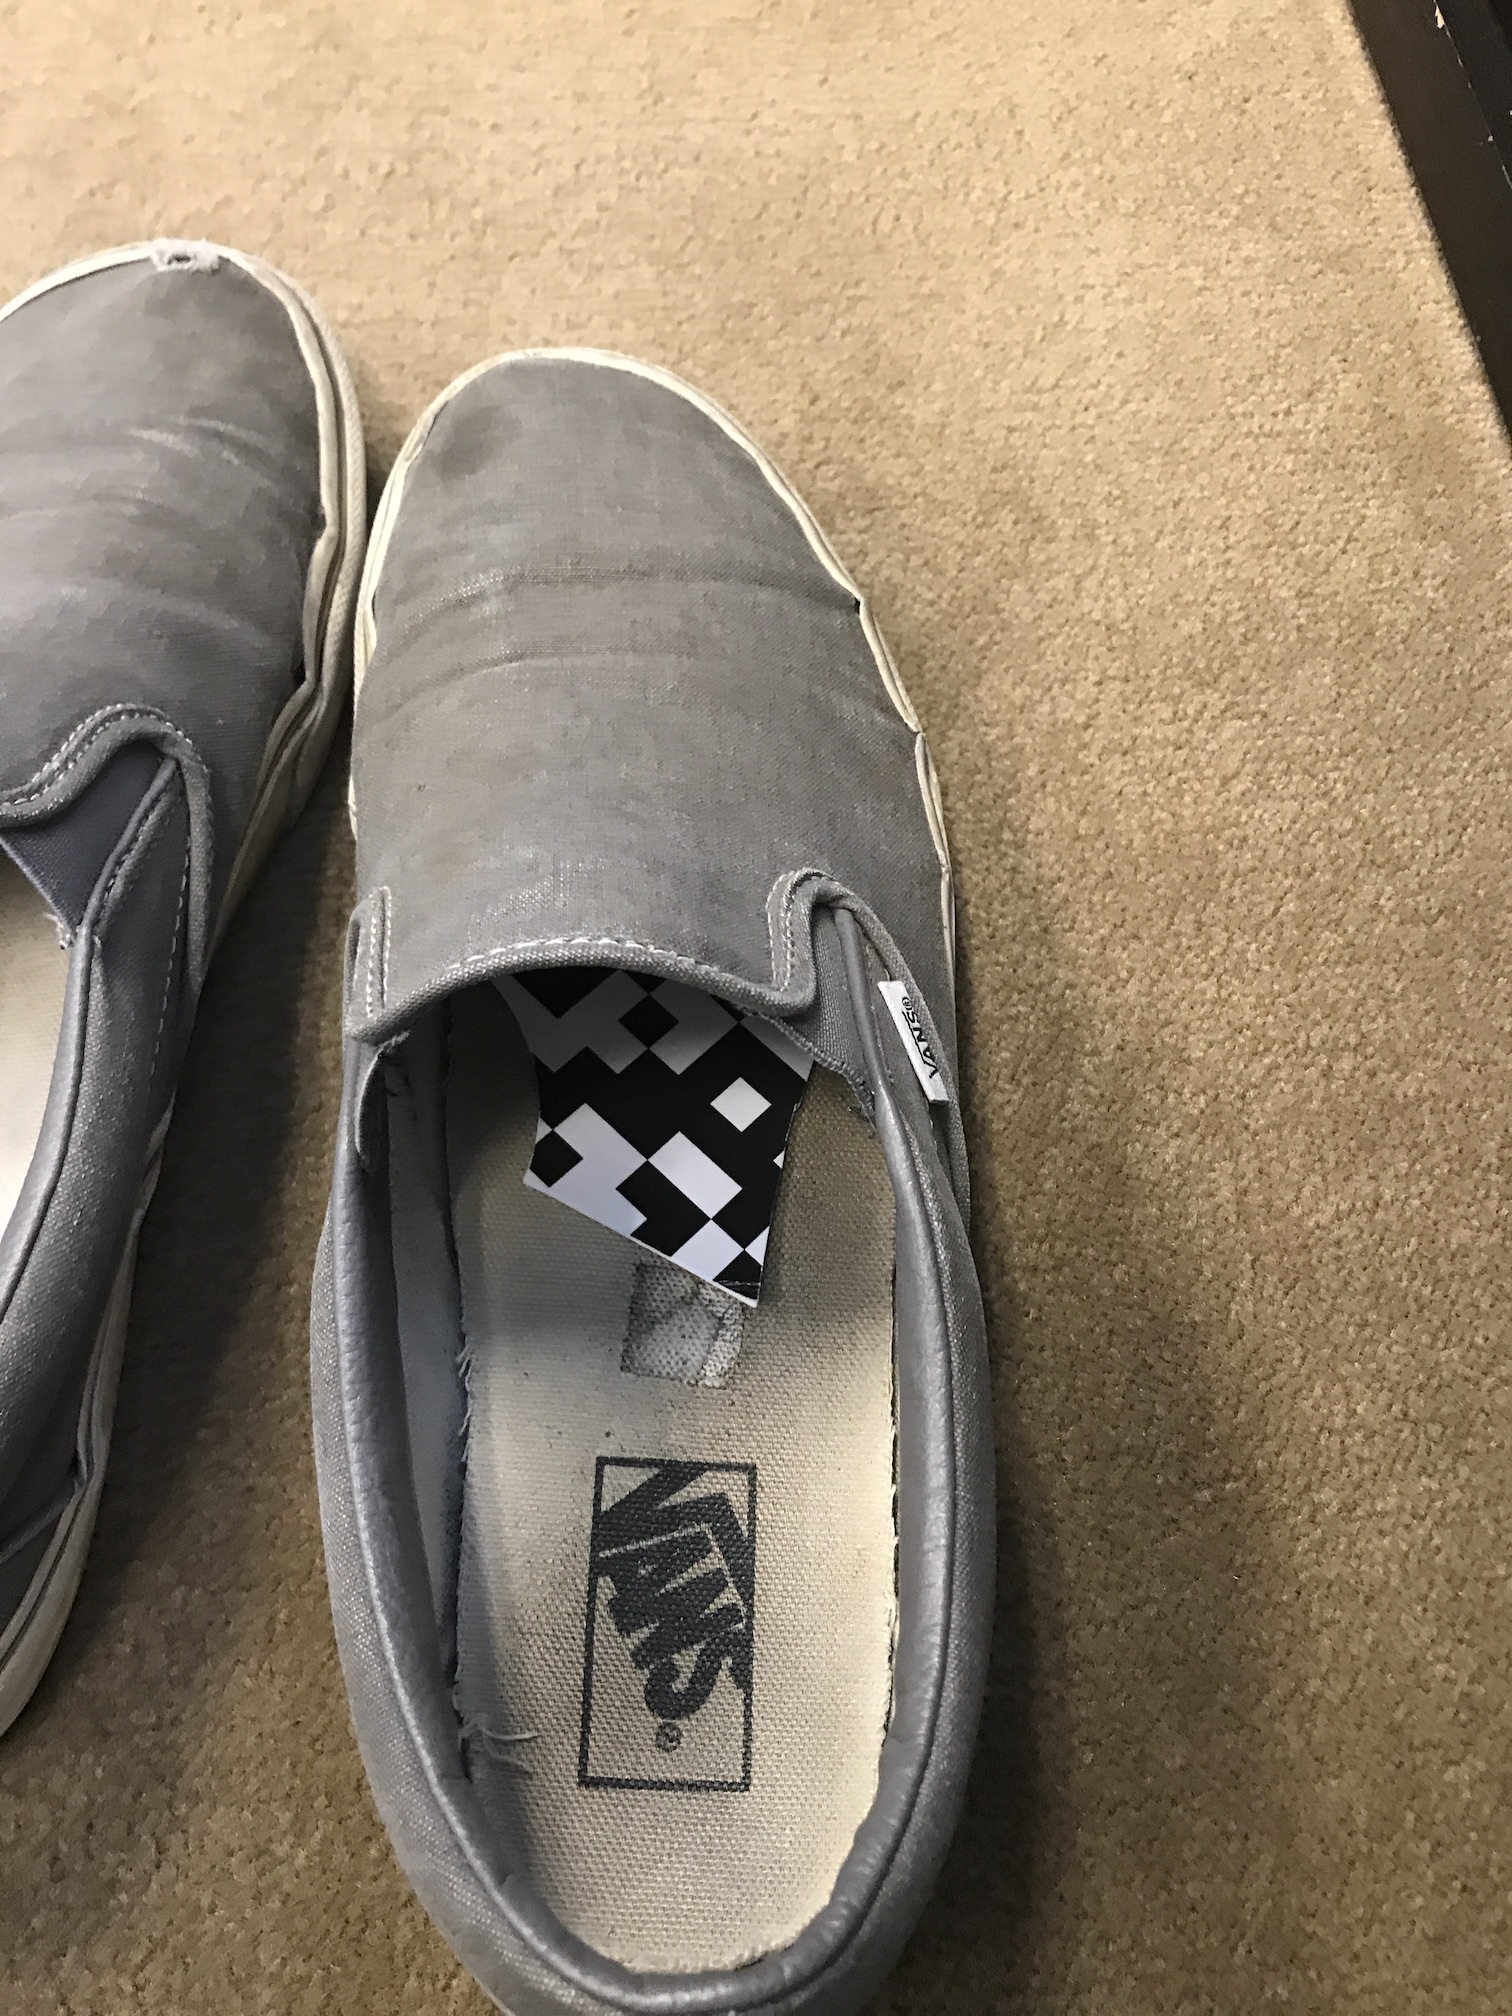 QR piece hidden in a gray shoe